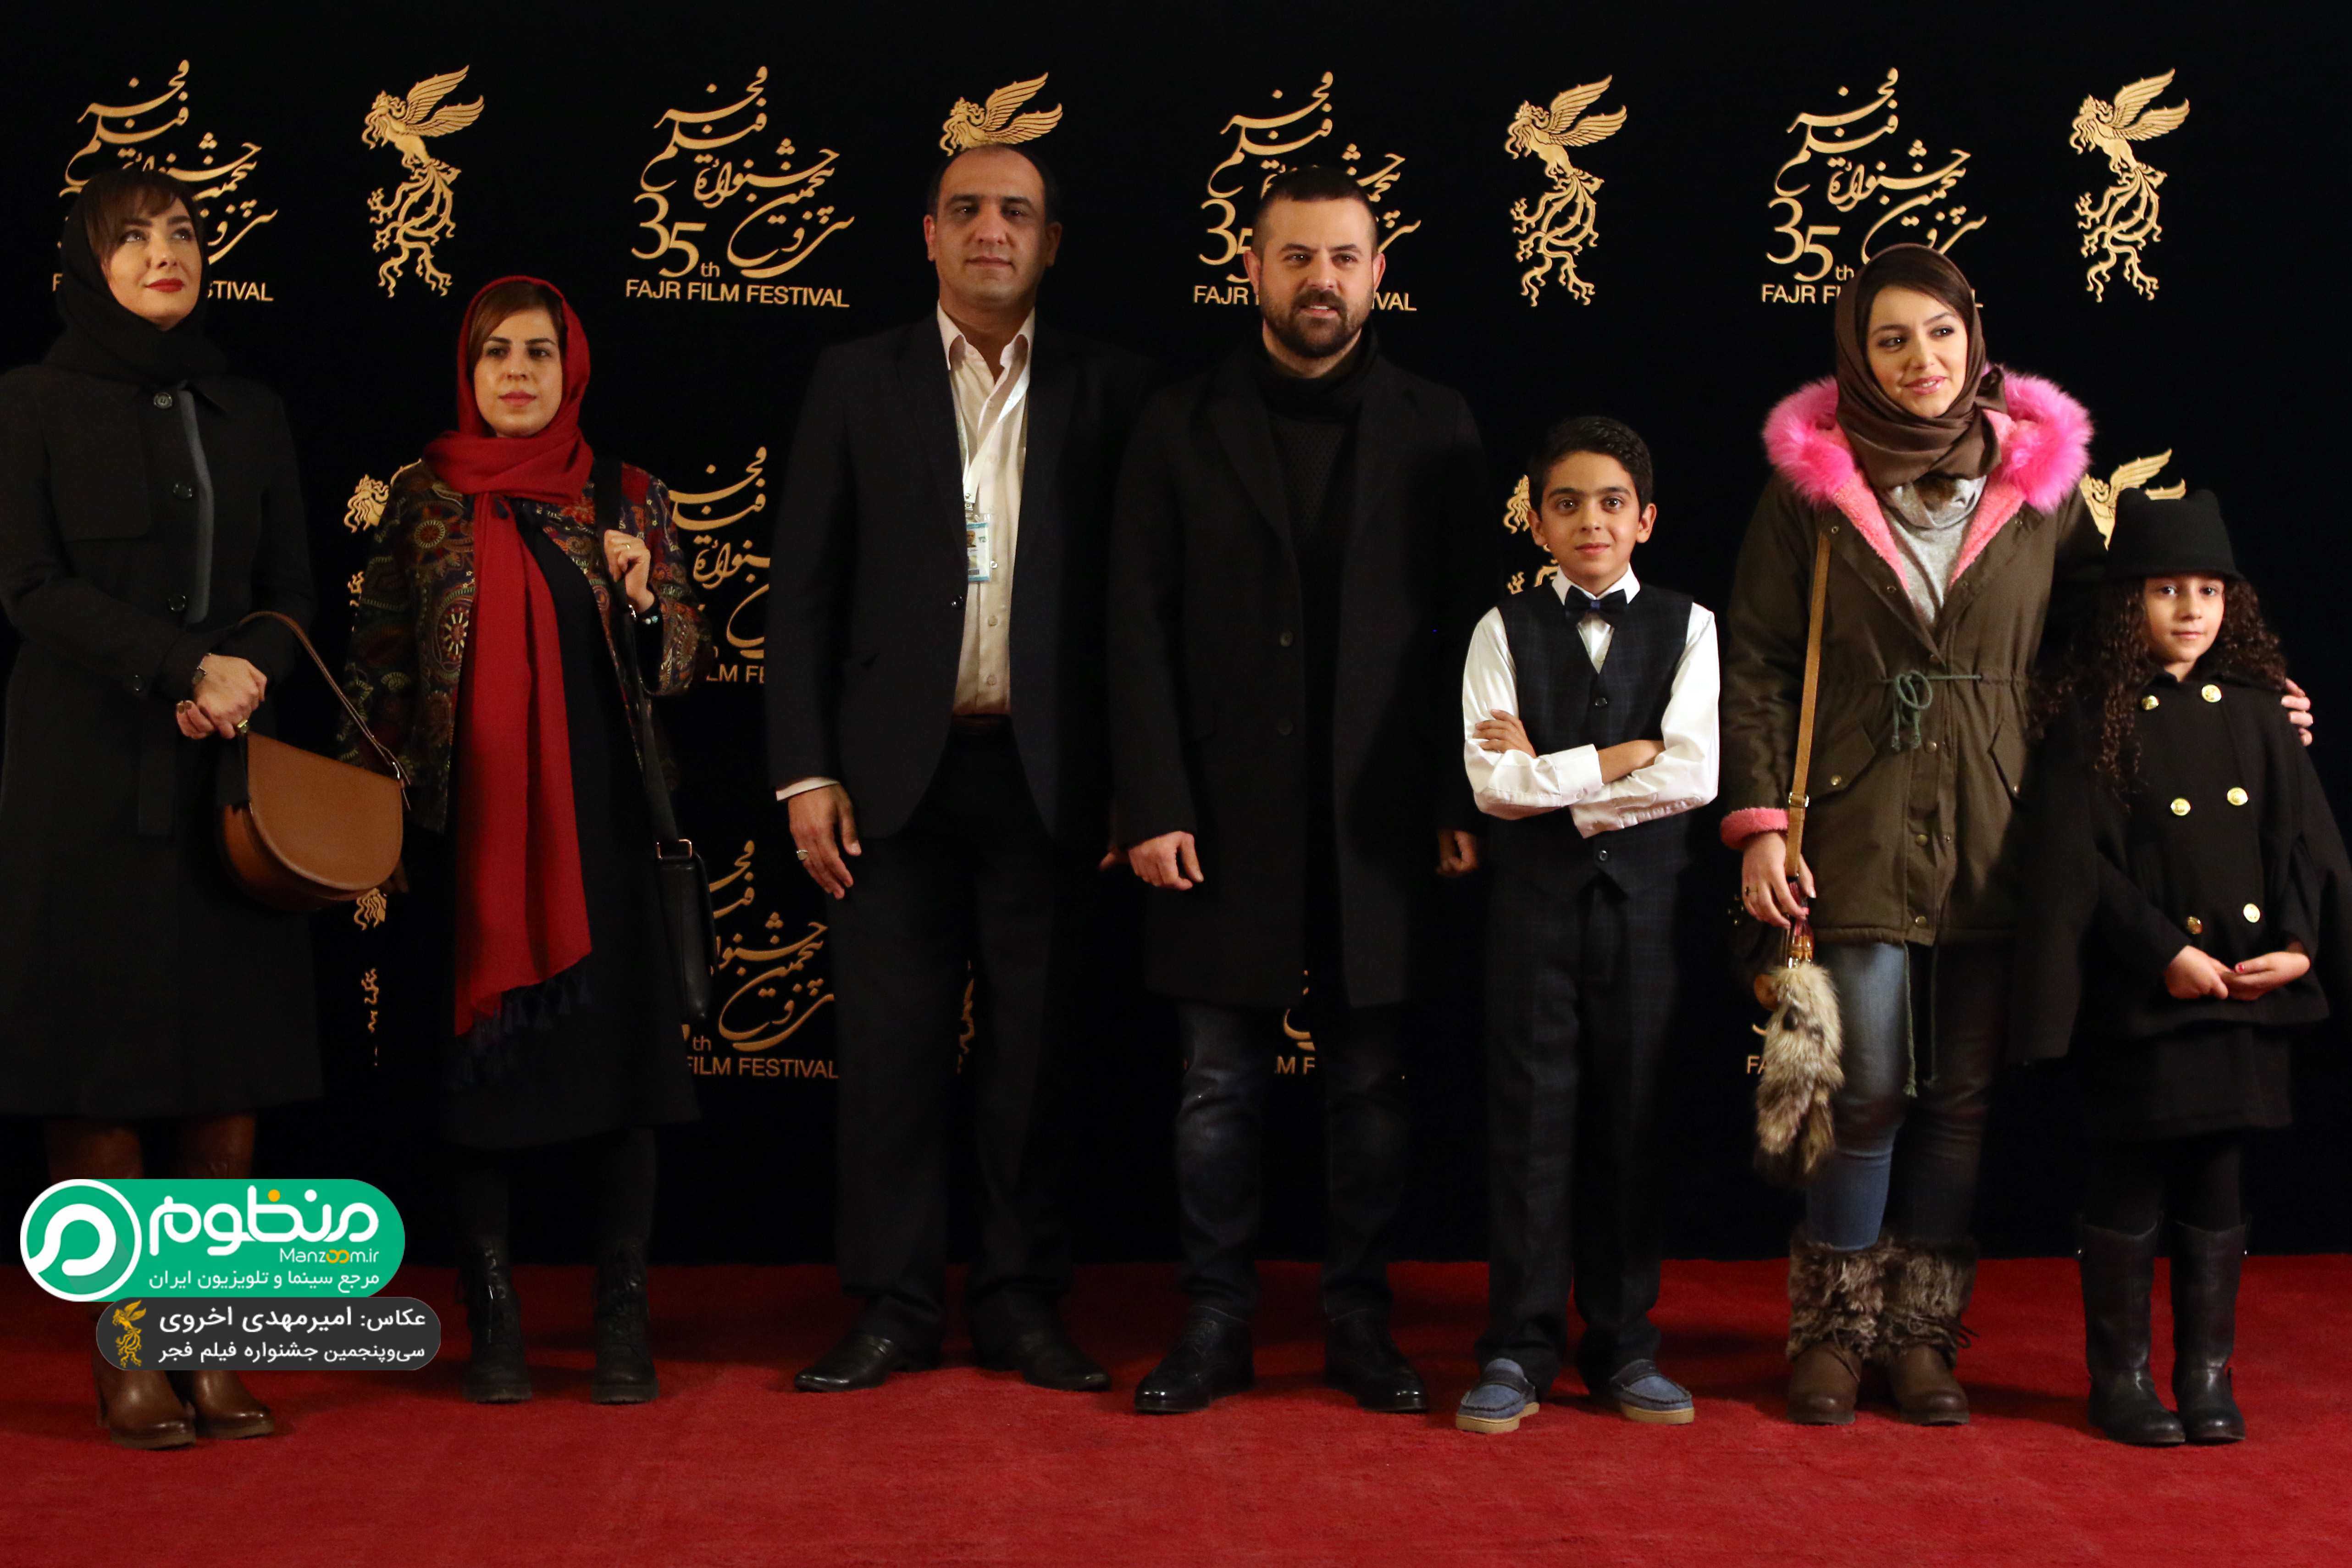 سجاد اسماعیلی در فرش قرمز فیلم سینمایی مادری به همراه آنا زارع، نازنین بیاتی، هانیه توسلی، هومن سیدی و رقیه توکلی